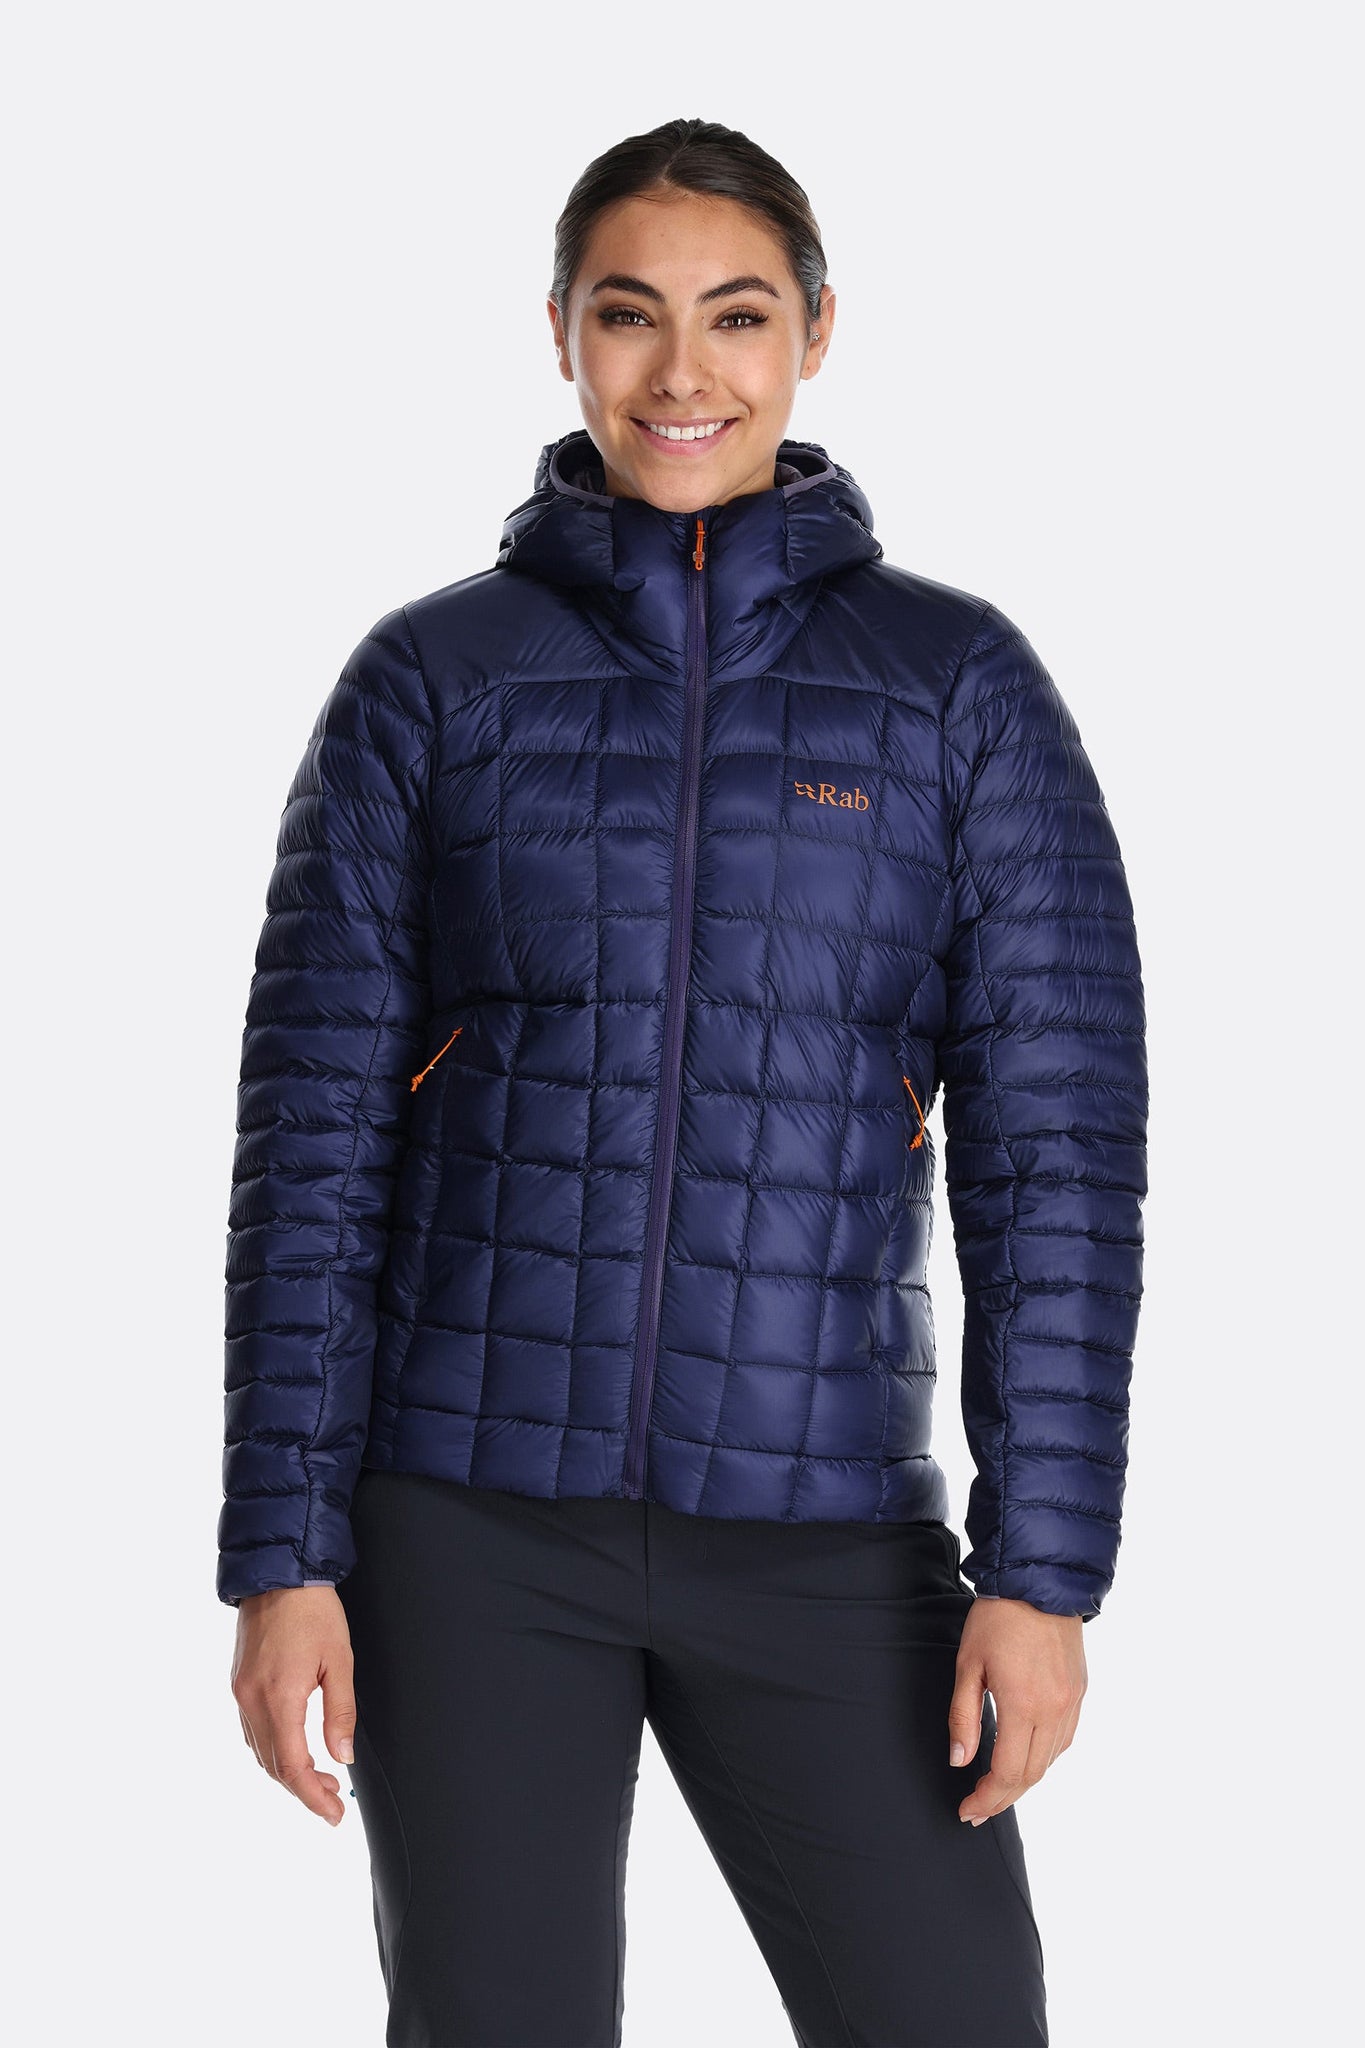 Pockets For Women - Rab Women's Microlight Alpine Down Jacket